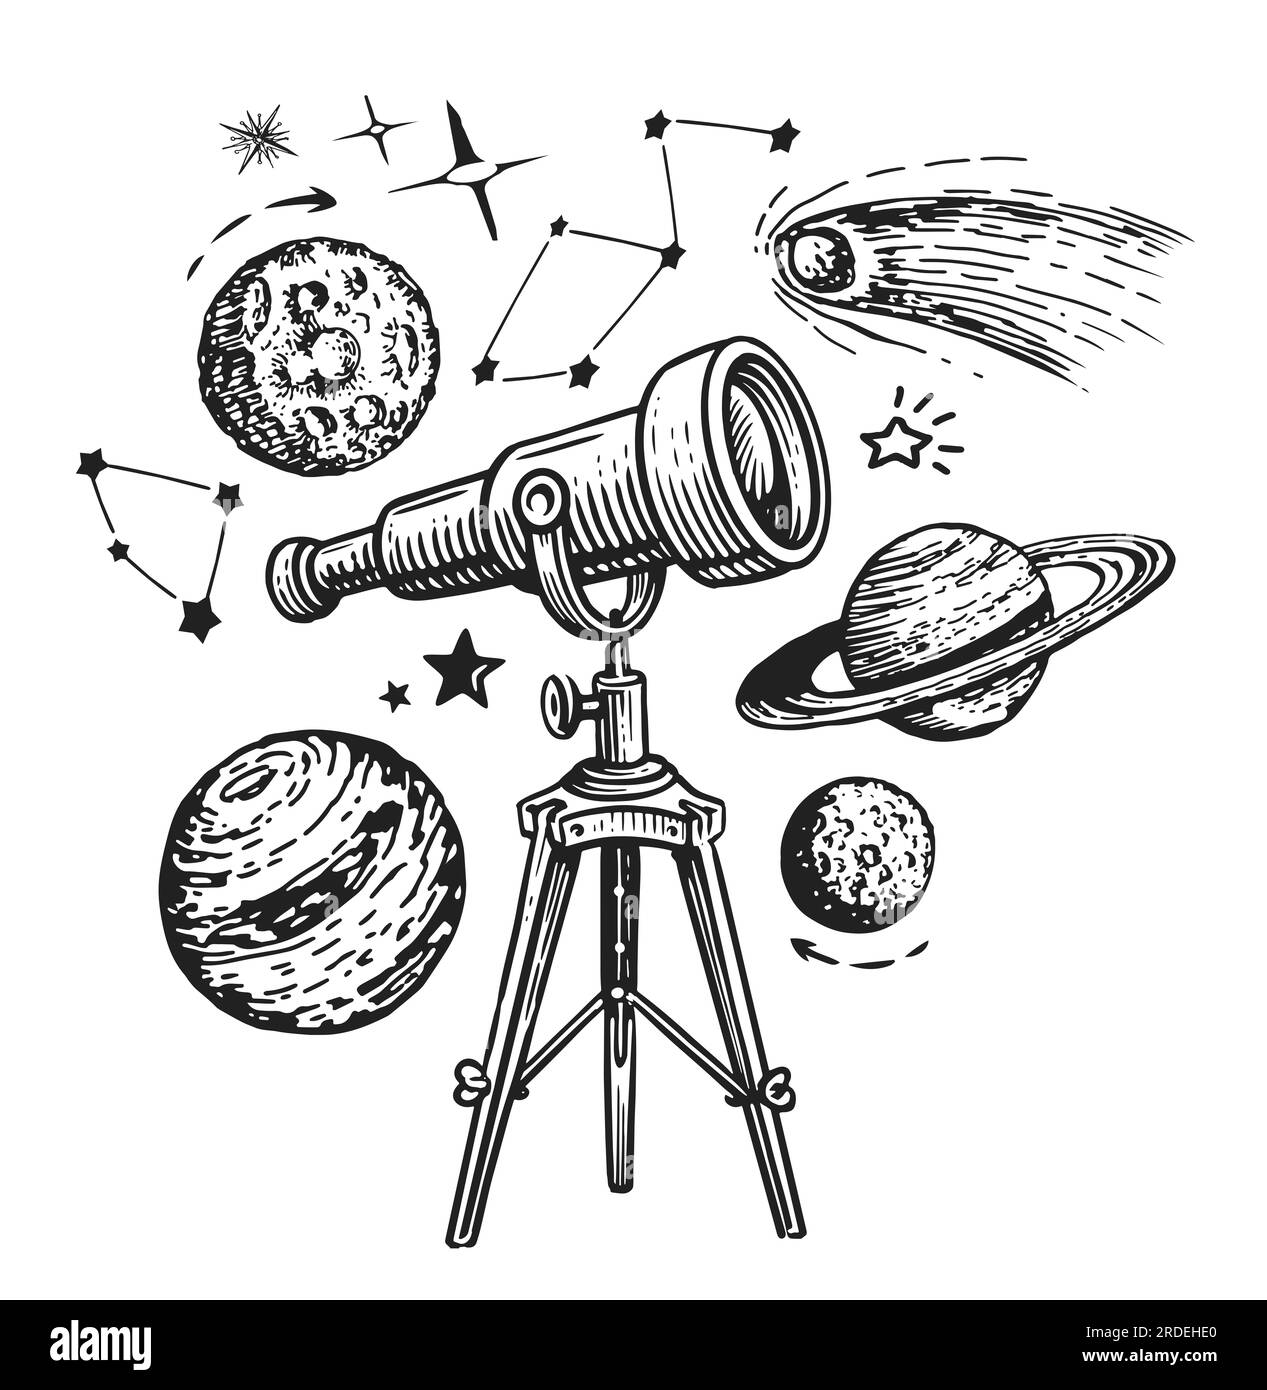 Télescope et étoiles, planètes. Astronomie, concept d'exploration spatiale. Esquisse illustration style gravure vintage Banque D'Images